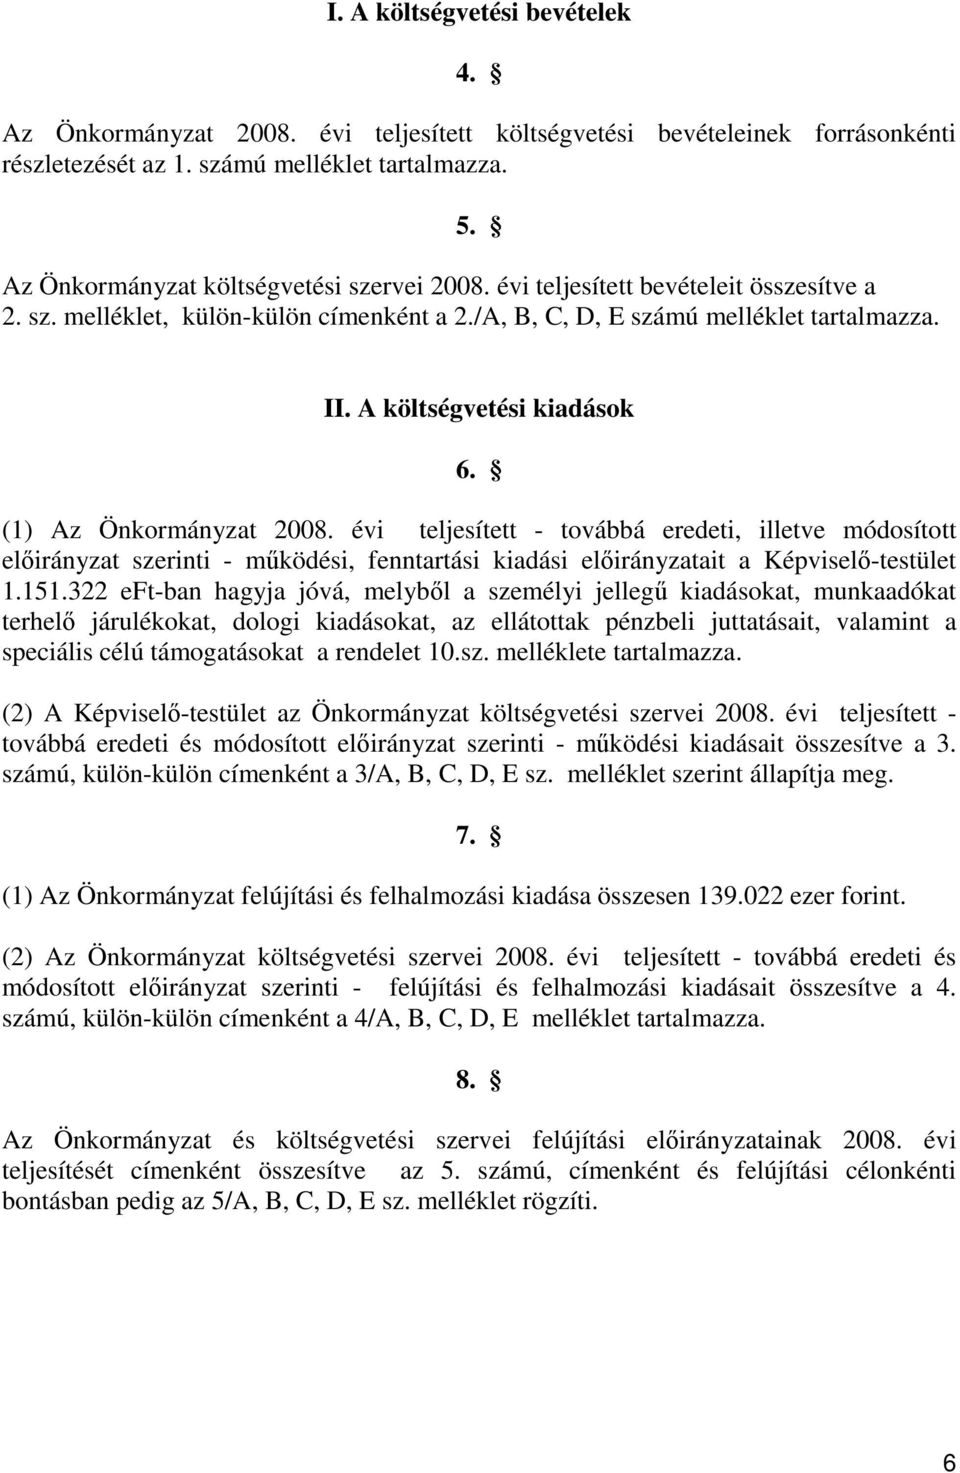 A költségvetési kiadások 6. (1) Az Önkormányzat 2008. évi teljesített - továbbá eredeti, illetve módosított elıirányzat szerinti - mőködési, fenntartási kiadási elıirányzatait a Képviselı-testület 1.